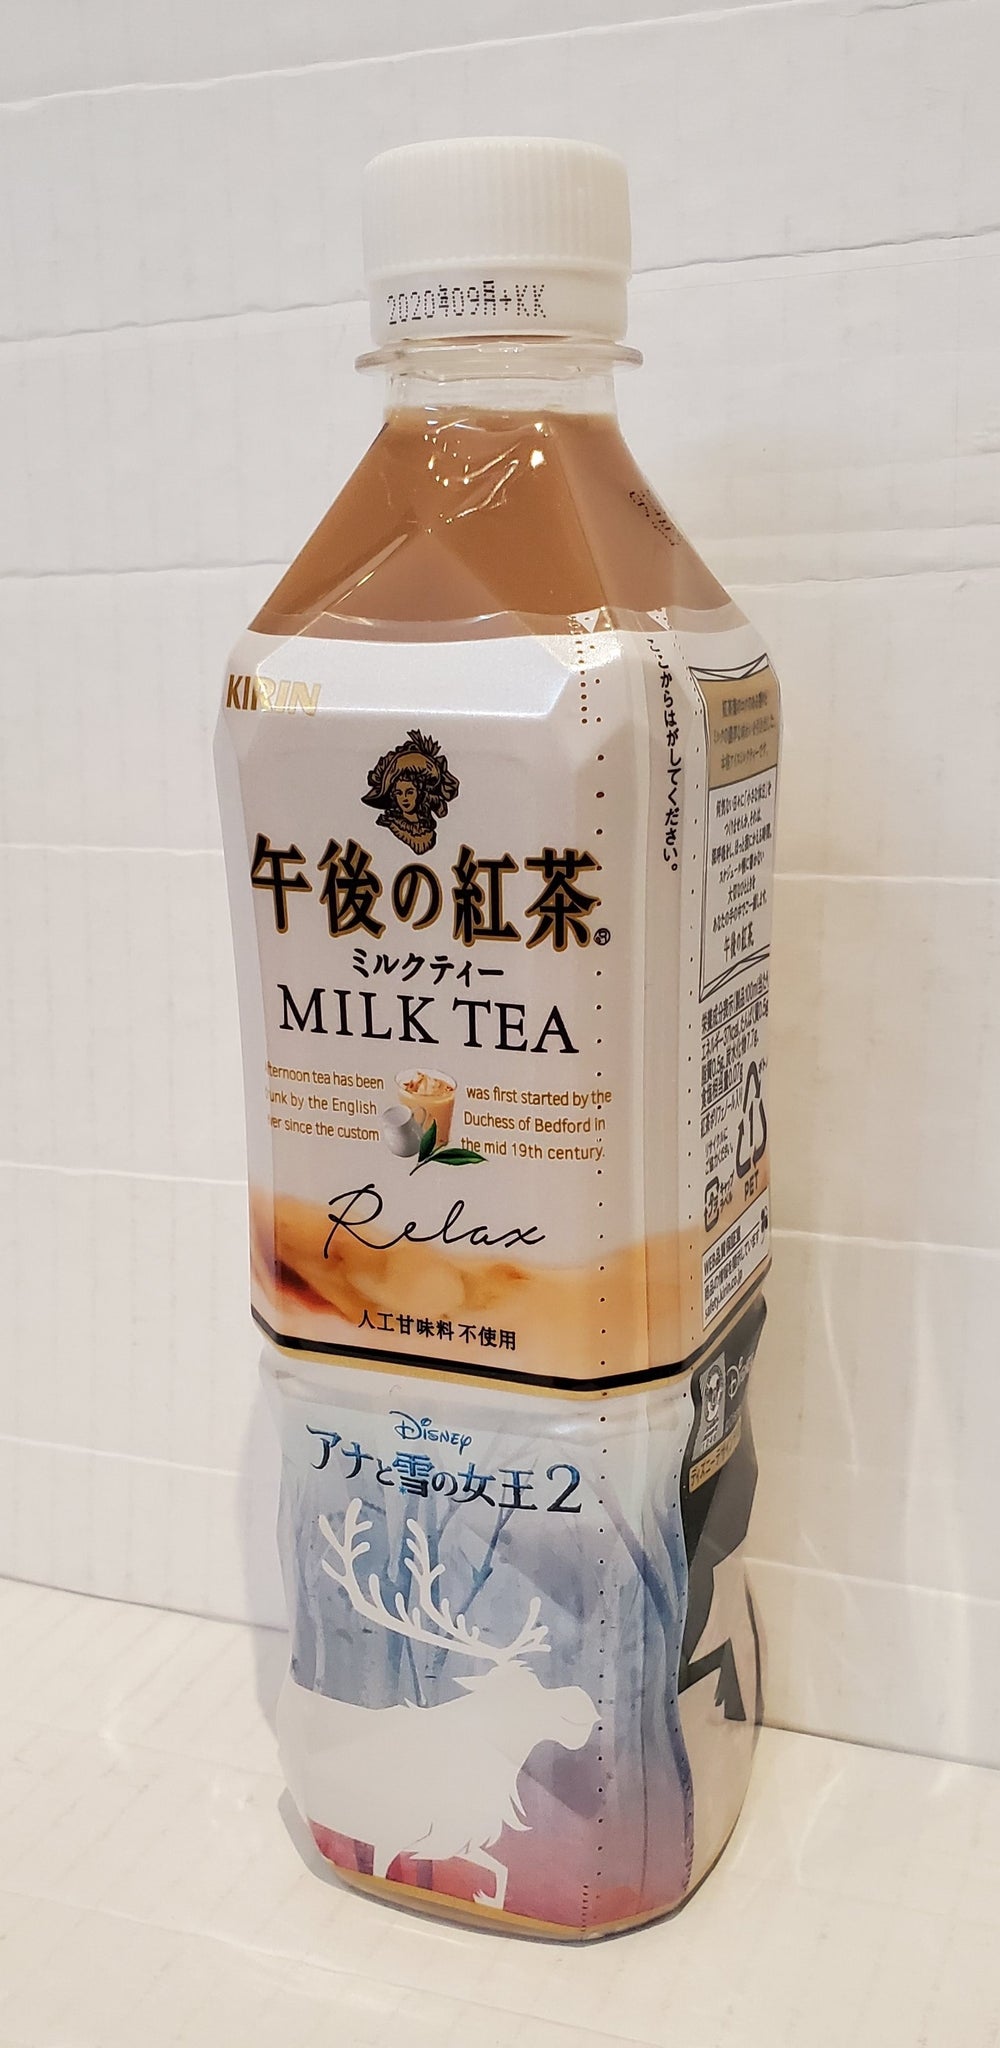 Kirin afternoon milk tea 麒麟午後之紅茶~奶茶